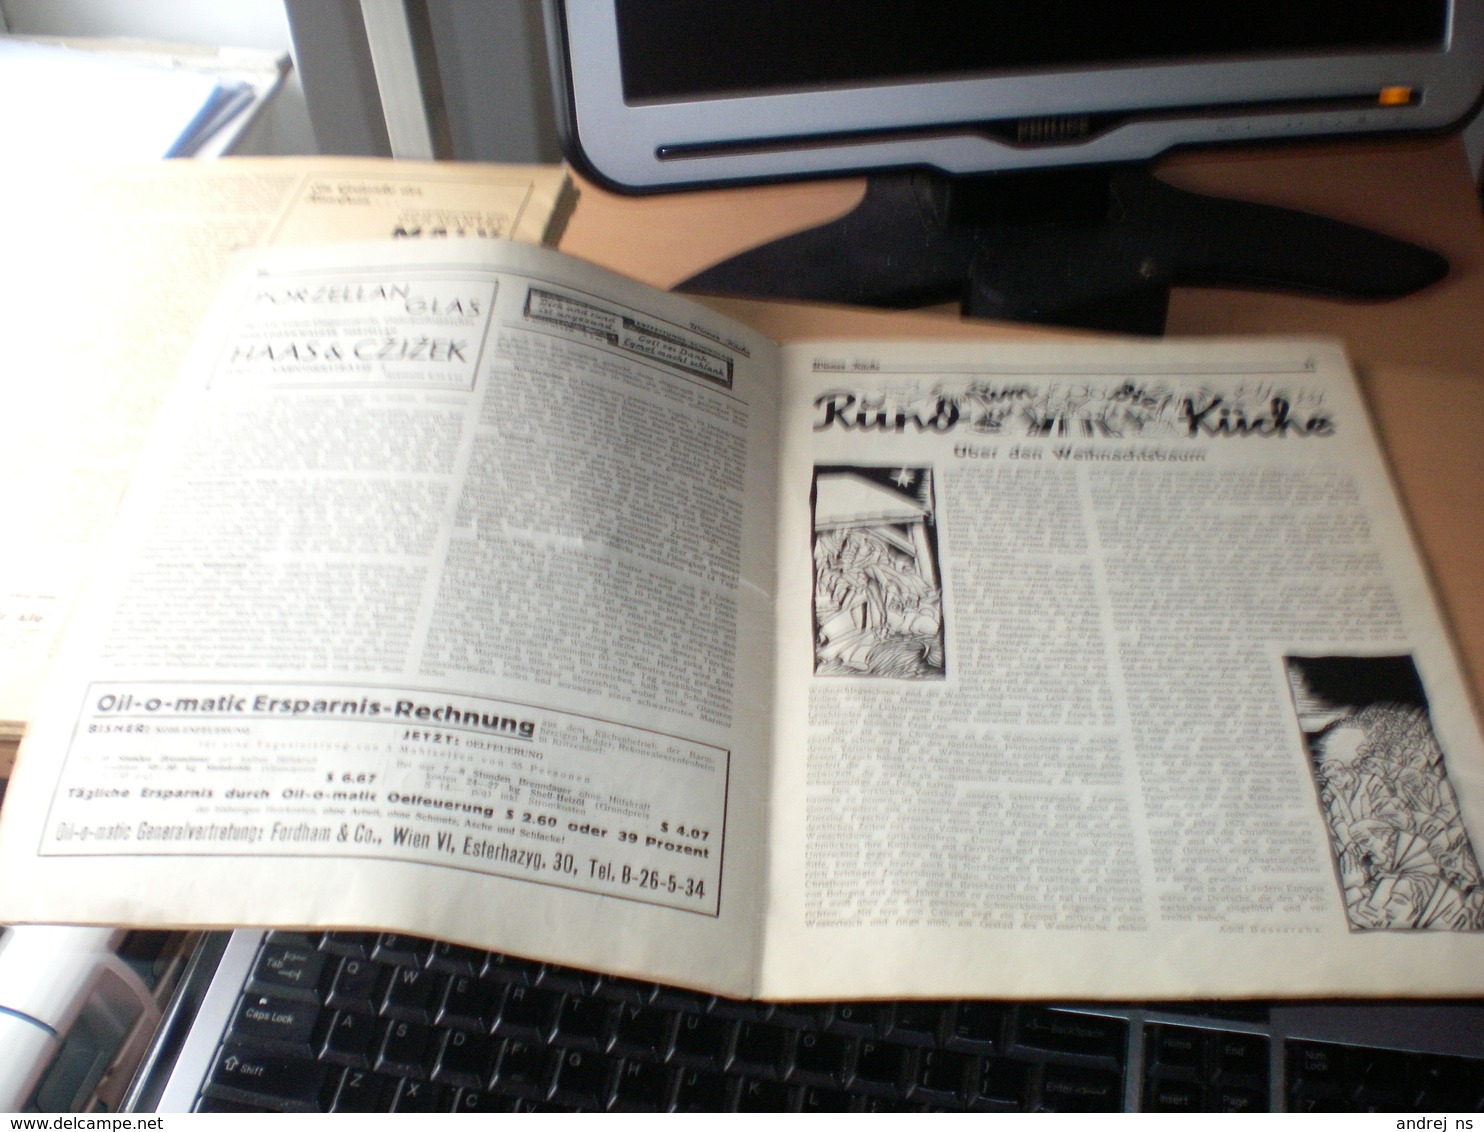 Wiener Kuche Herausgegeben Von Kuchenchef Franz Ruhm Nr 62 Wien 1935 24 Pages - Eten & Drinken